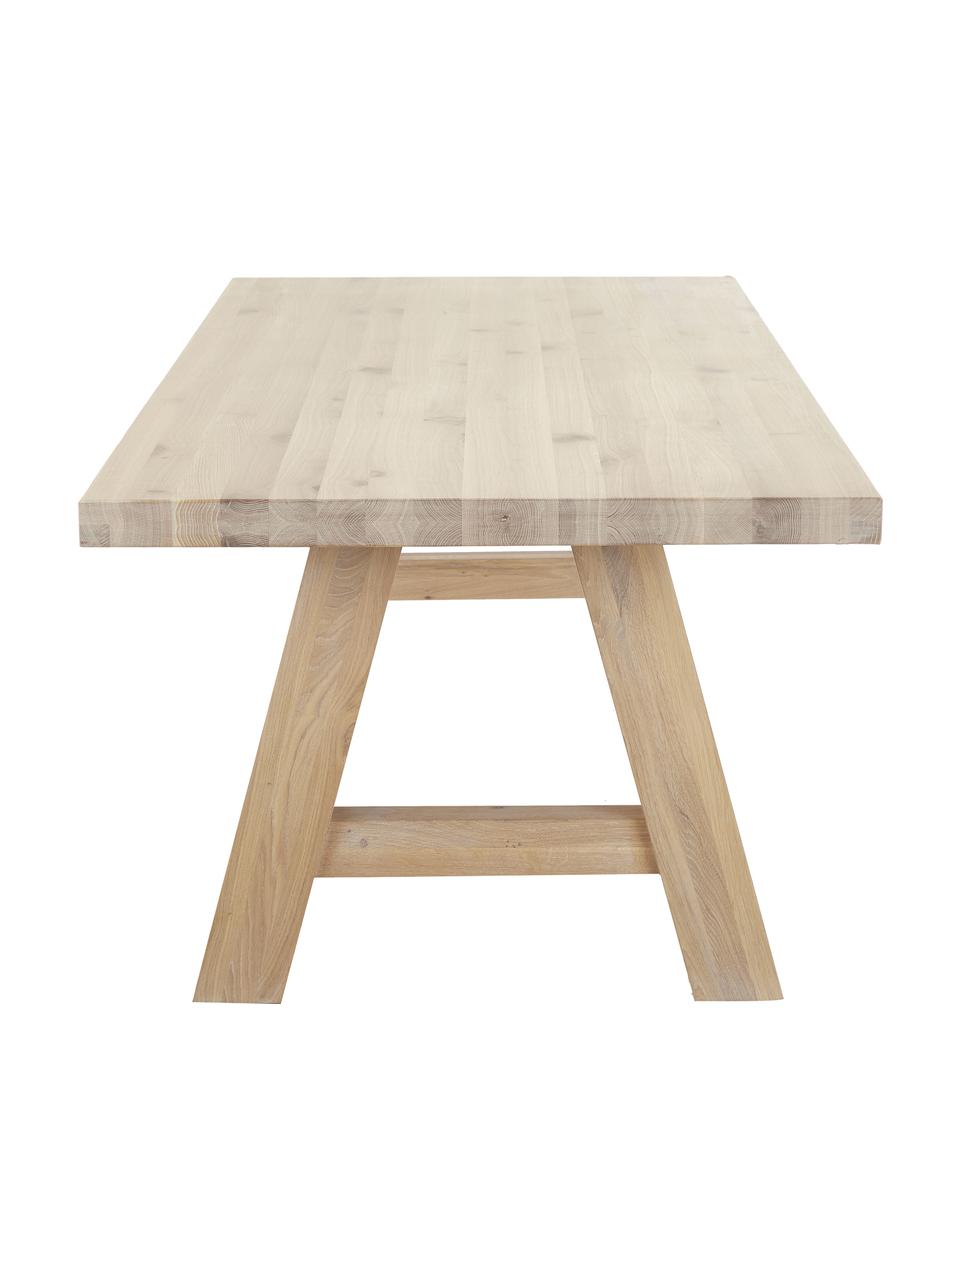 Tavolo in legno di quercia Ashton, in diverse dimensioni, Legno di quercia massiccio leggermente oliato 
100% legno FSC proveniente da foreste sostenibili, Legno di quercia leggermente oliato, Larg. 240 x Prof. 100 cm